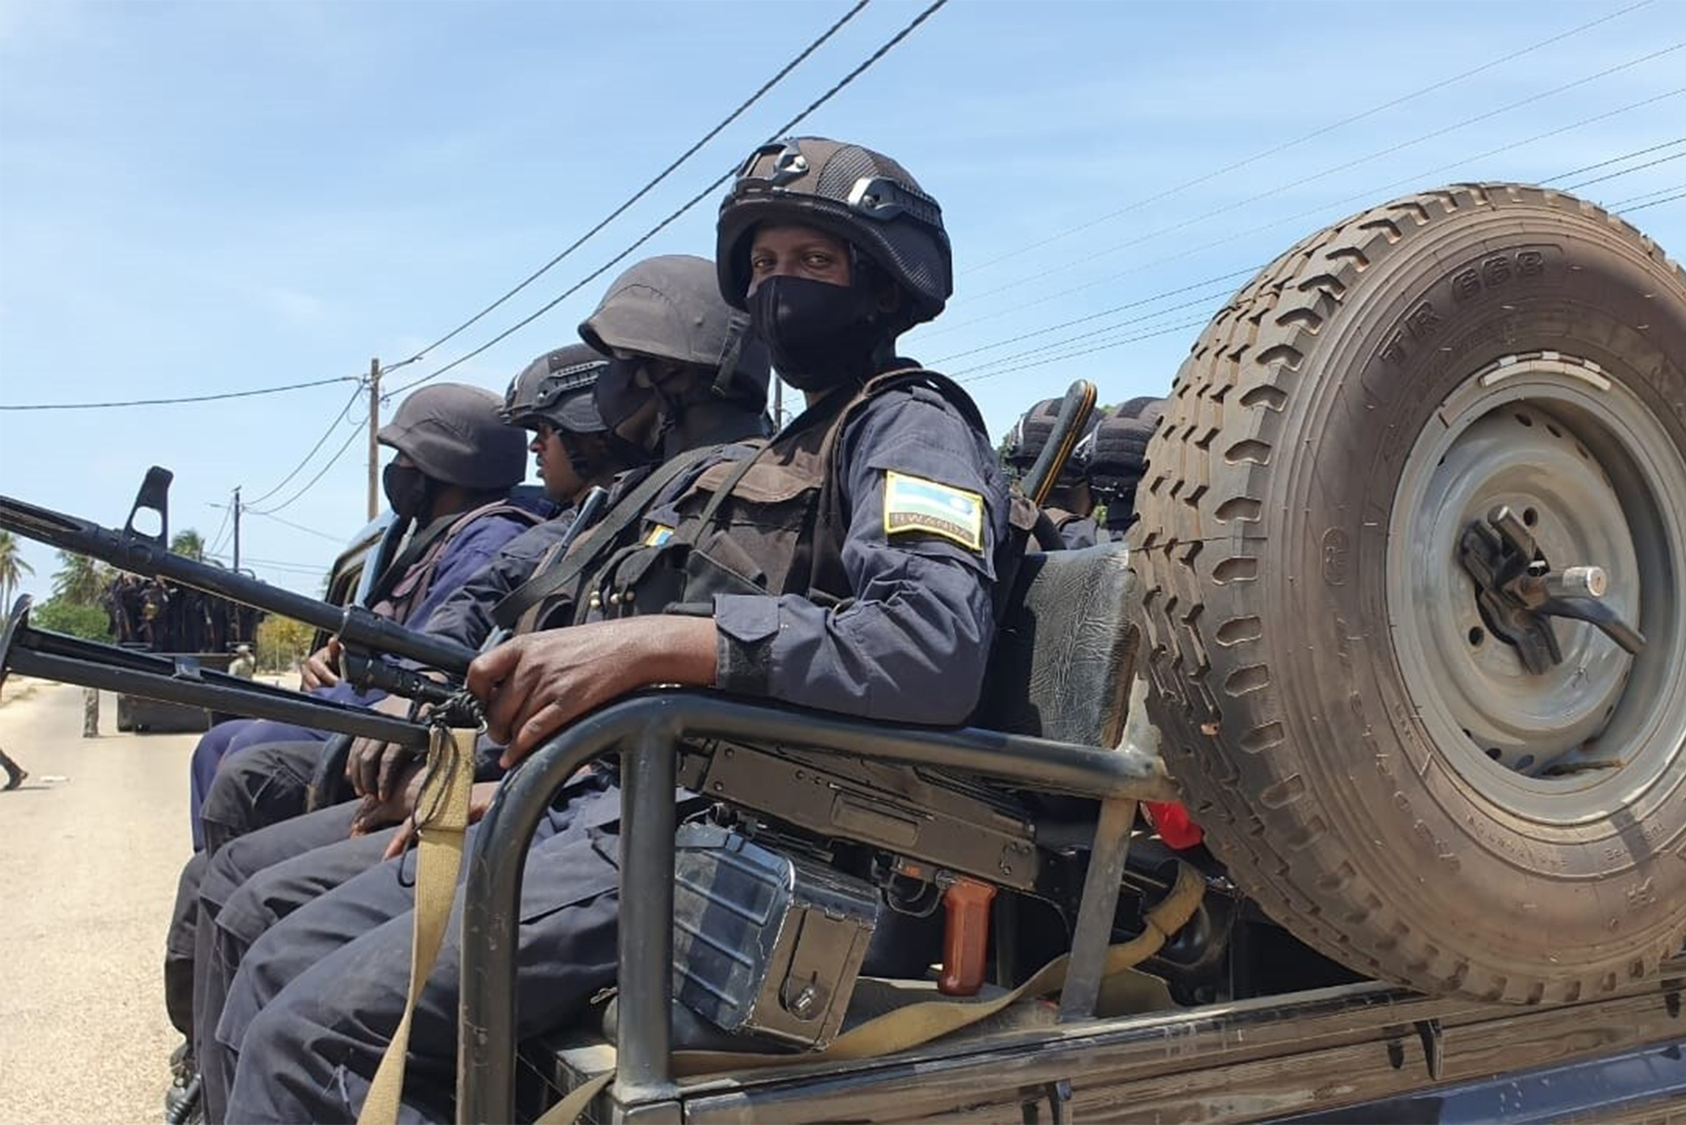 Rwandan troops in Mocimboa da Praia, Cabo Delgado province, Mozambique on October 13, 2021. (Francisco Júnior/VOA)